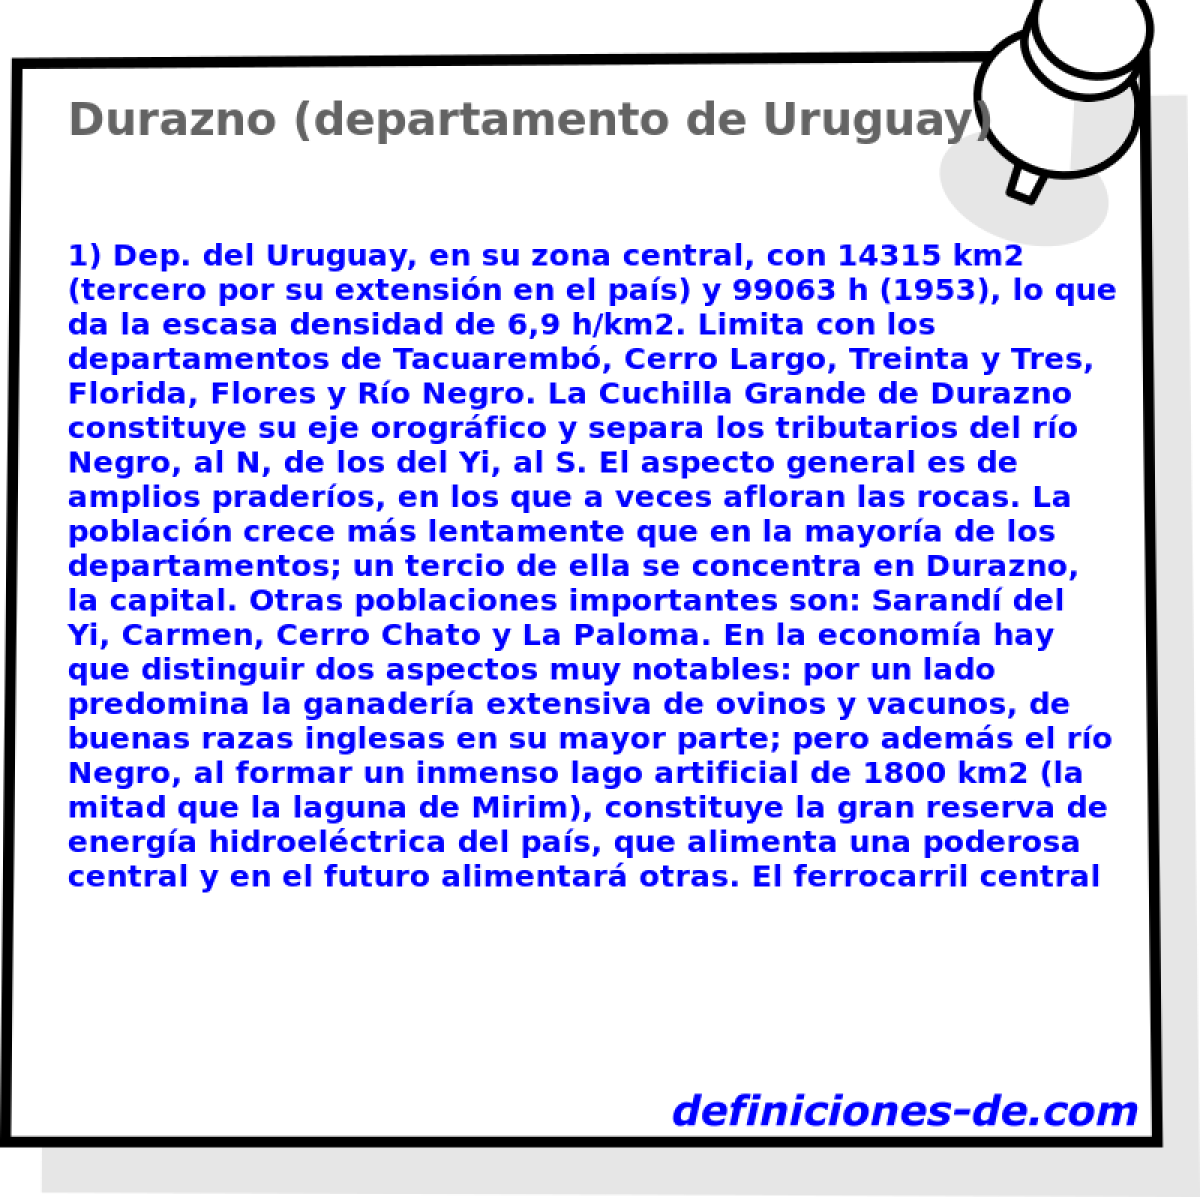 Durazno (departamento de Uruguay) 